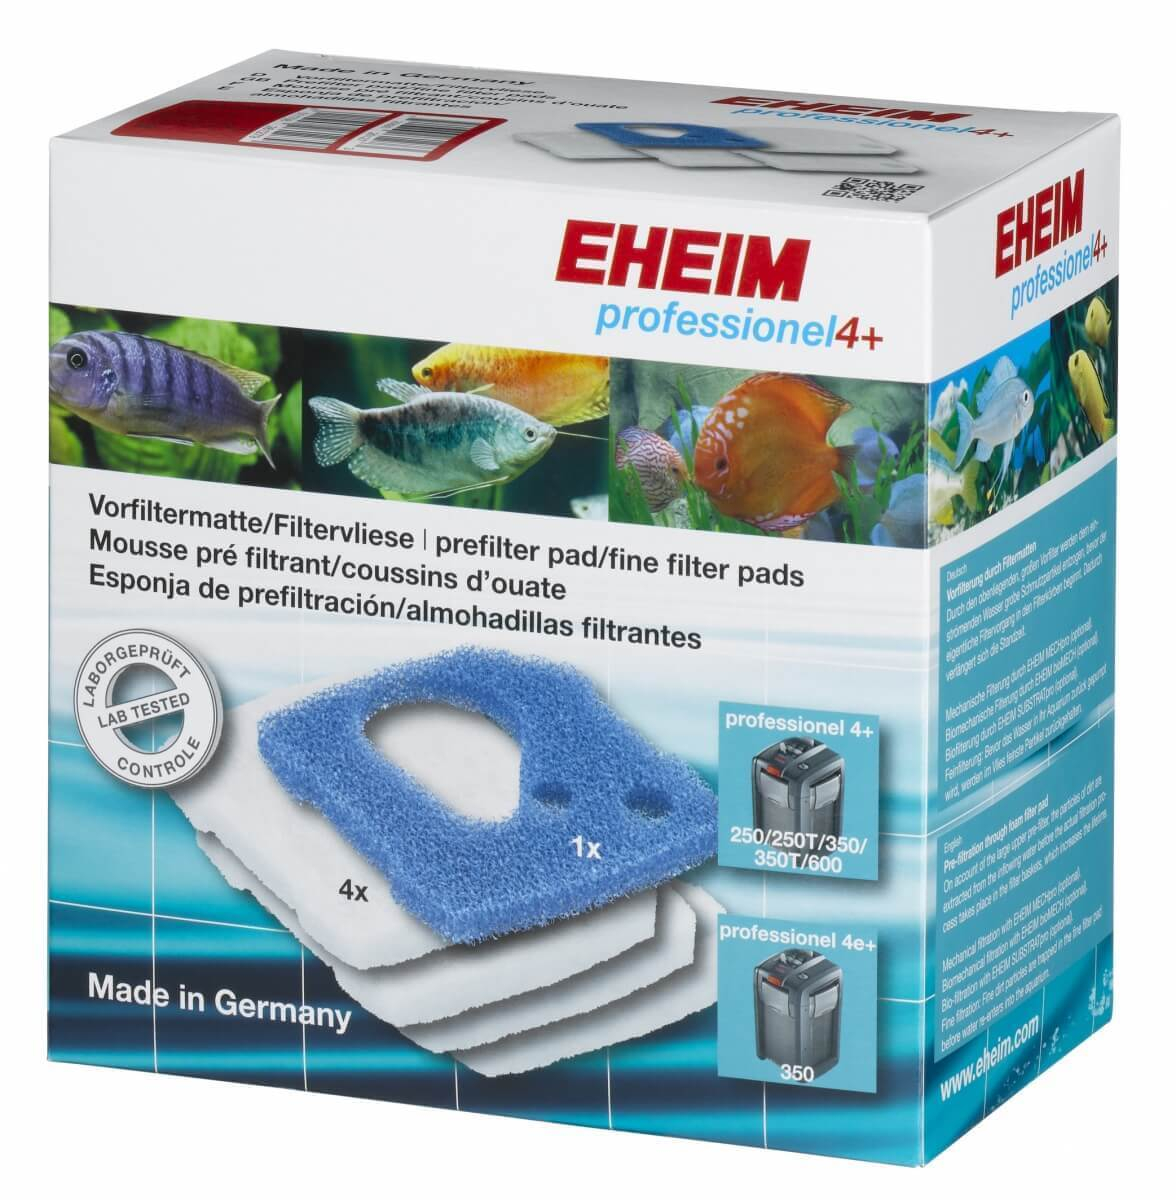 Filtersponzen voor filter EHEIM Pro 4+ en 4e+